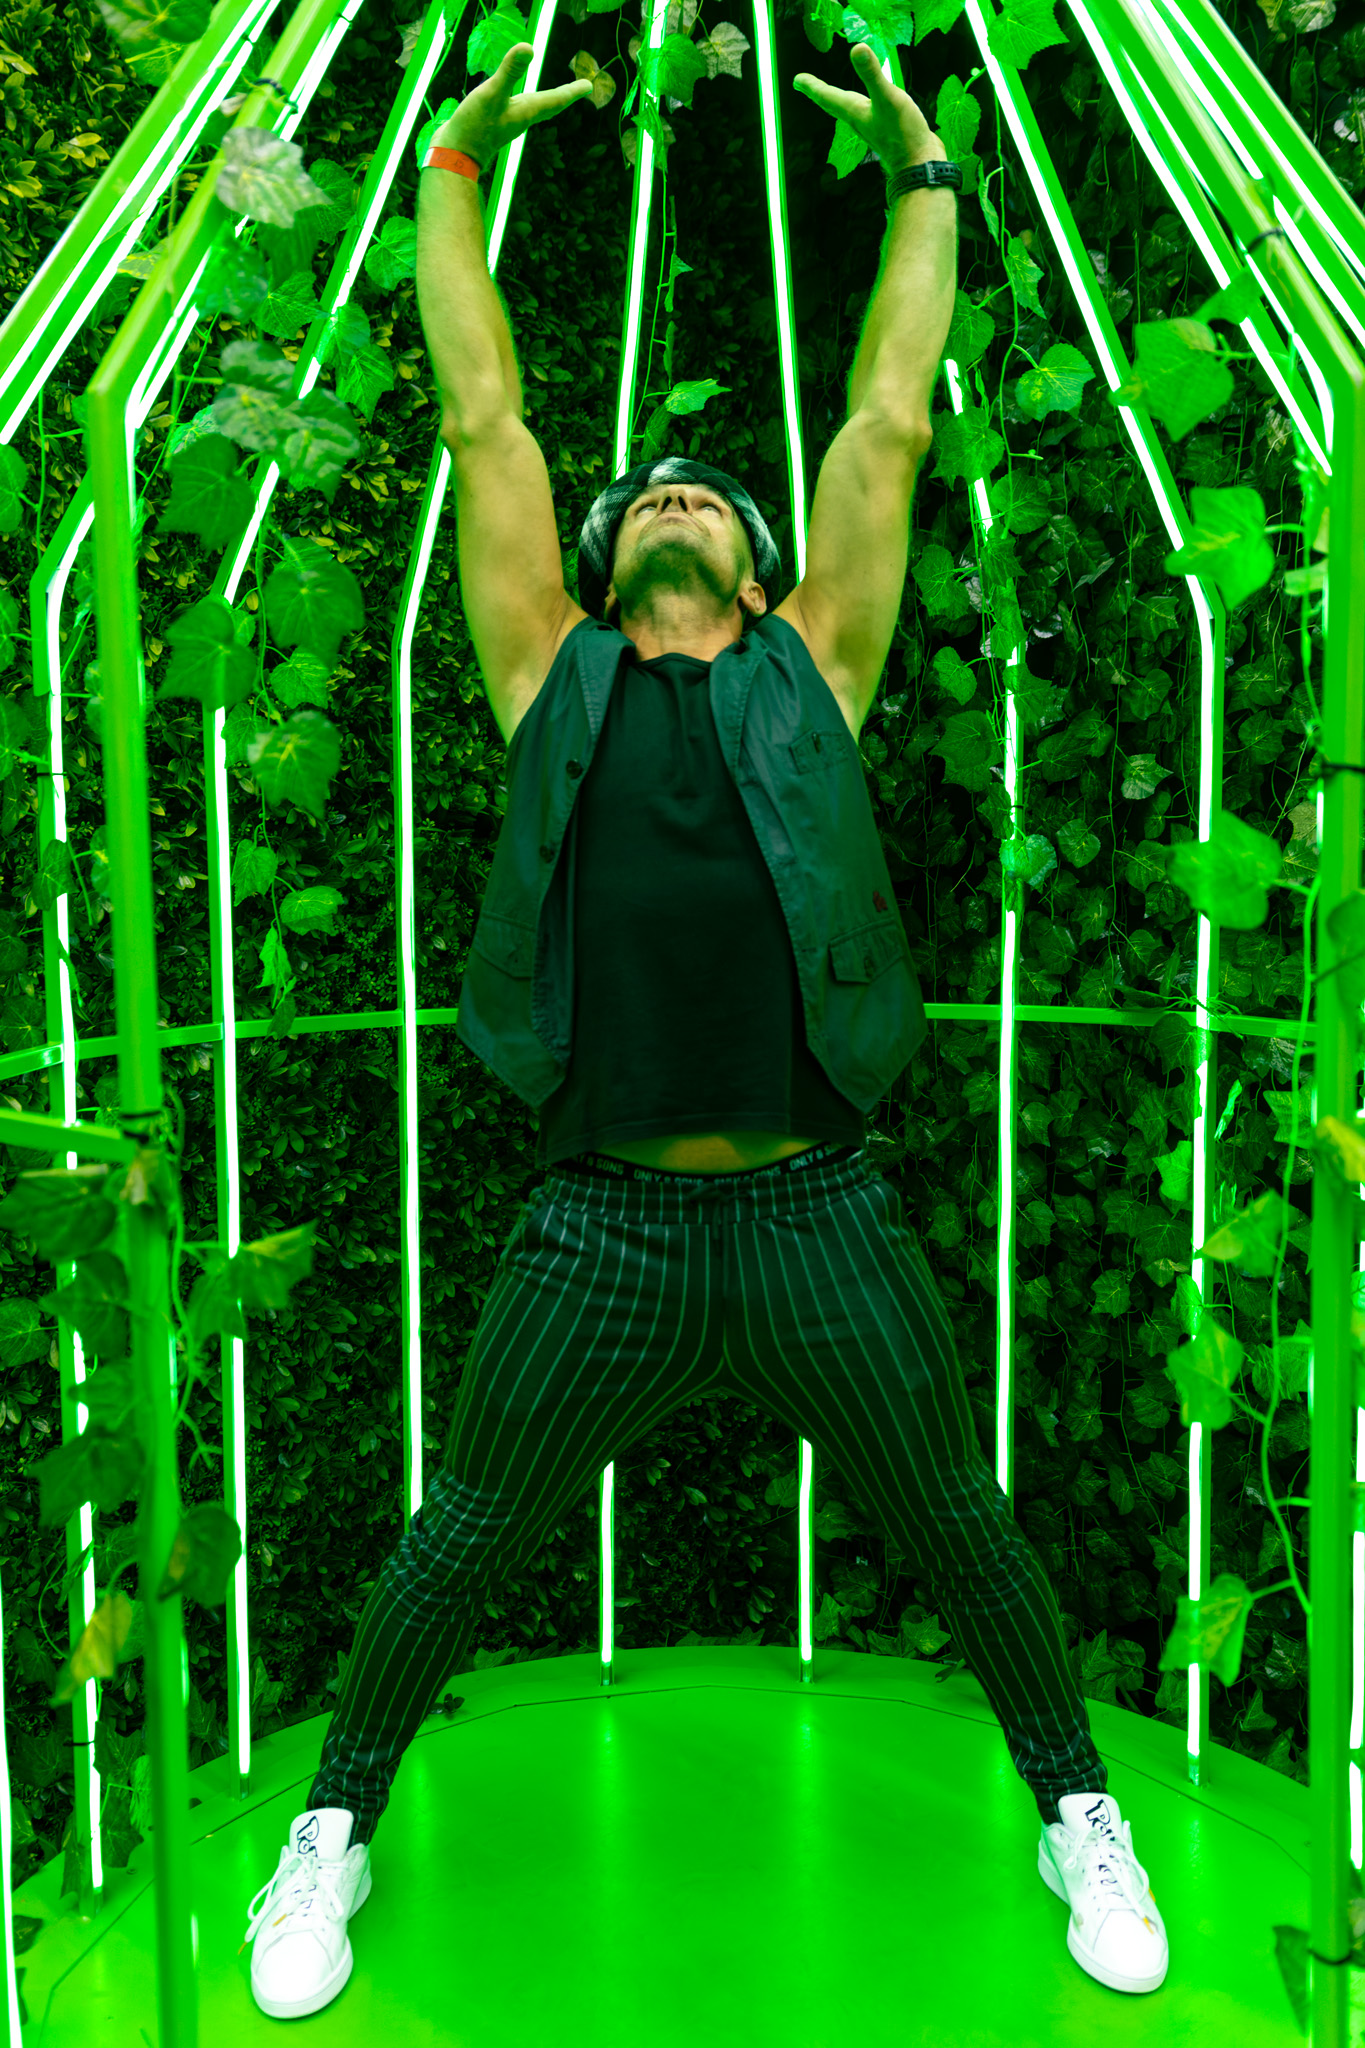 Mężczyzna stojący w rozkroku z uniesionymi rękami na zielonym tle.